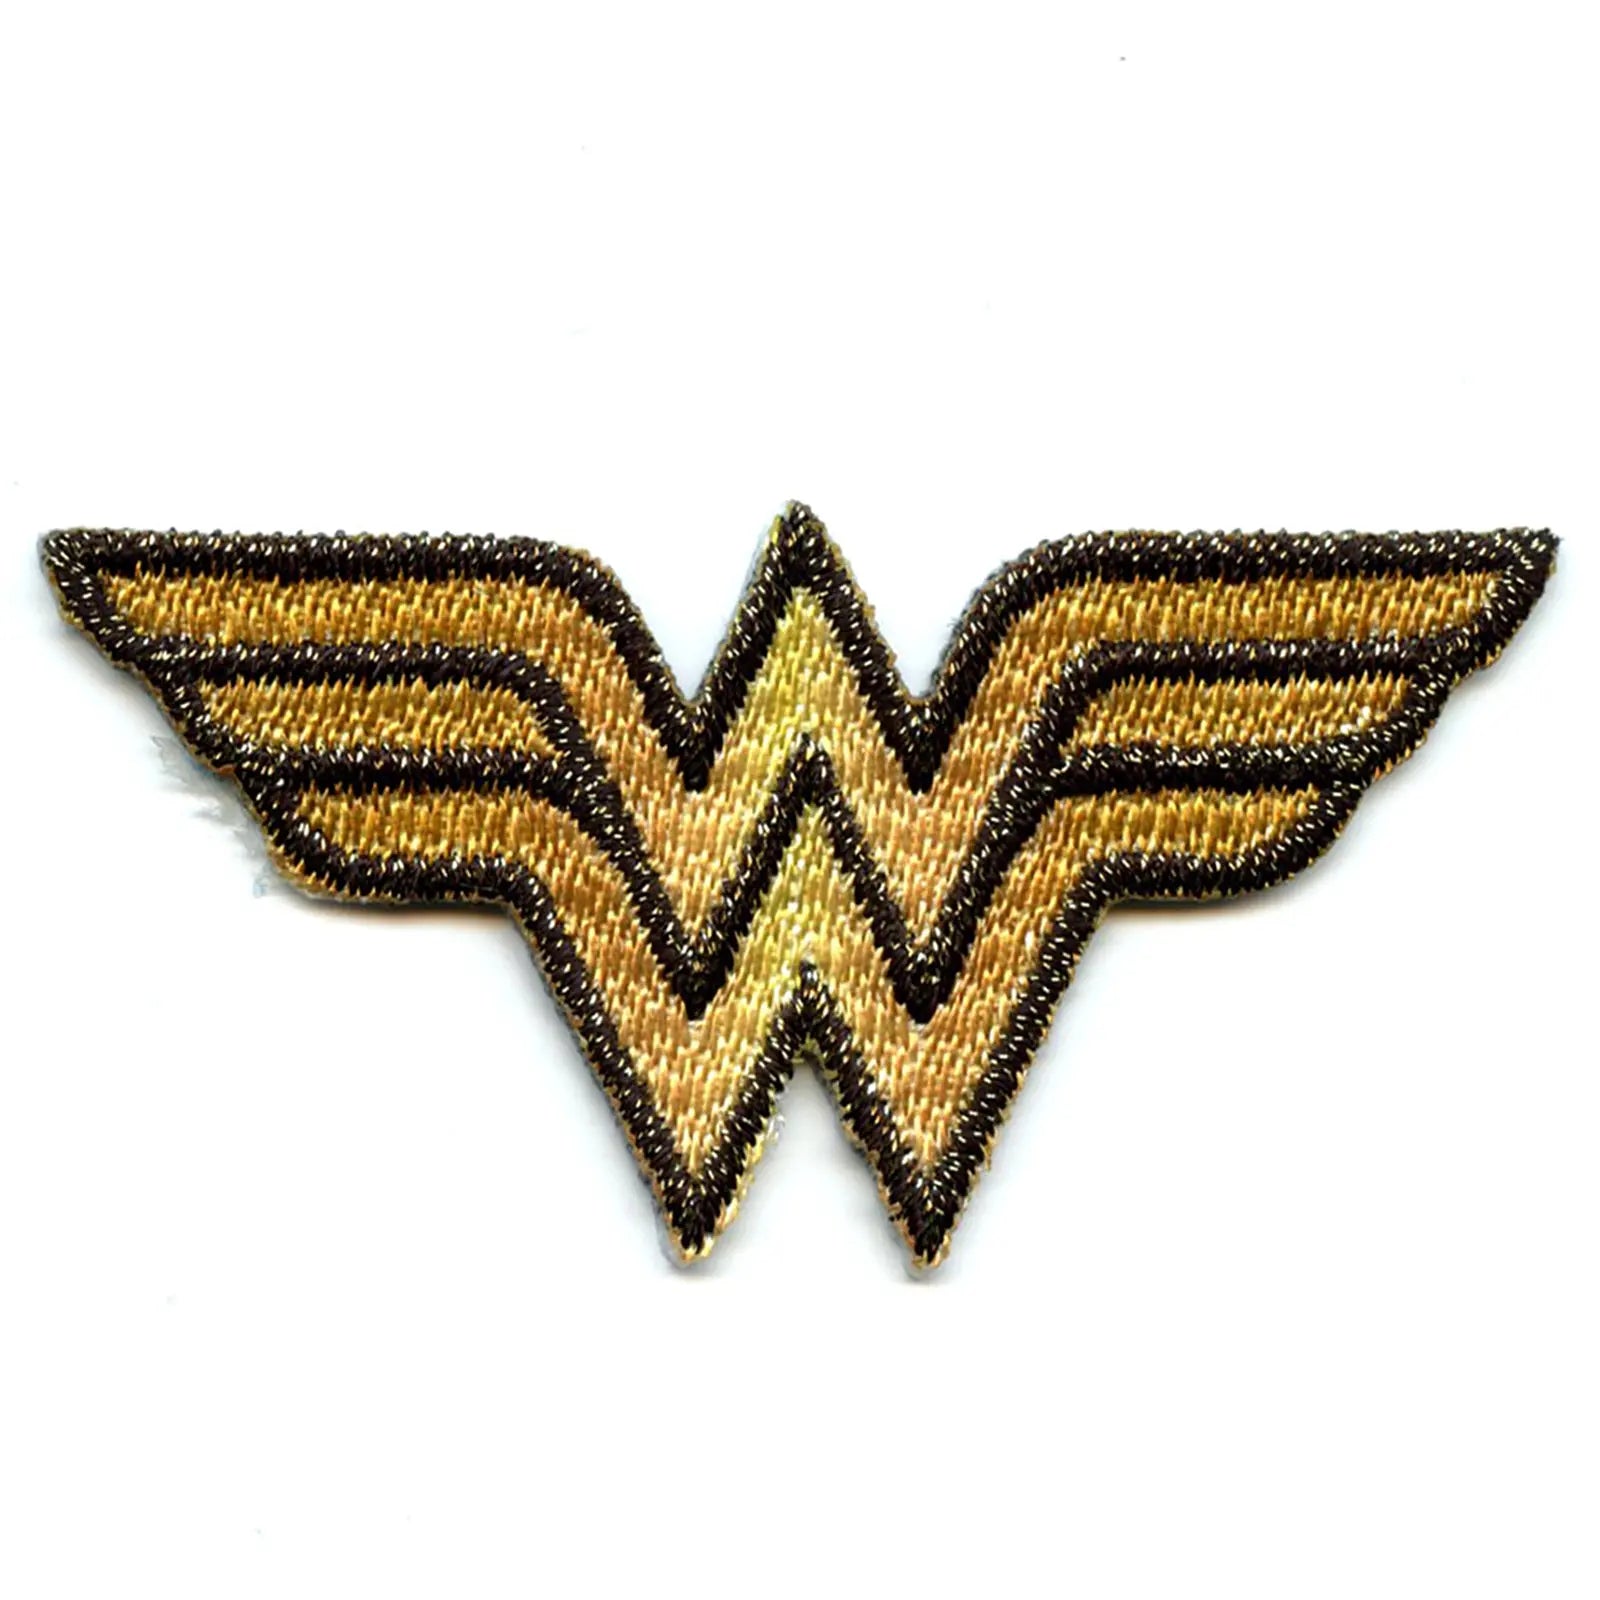 Dc Comics Wonder Woman Logo Iron on Applique Patch - S 